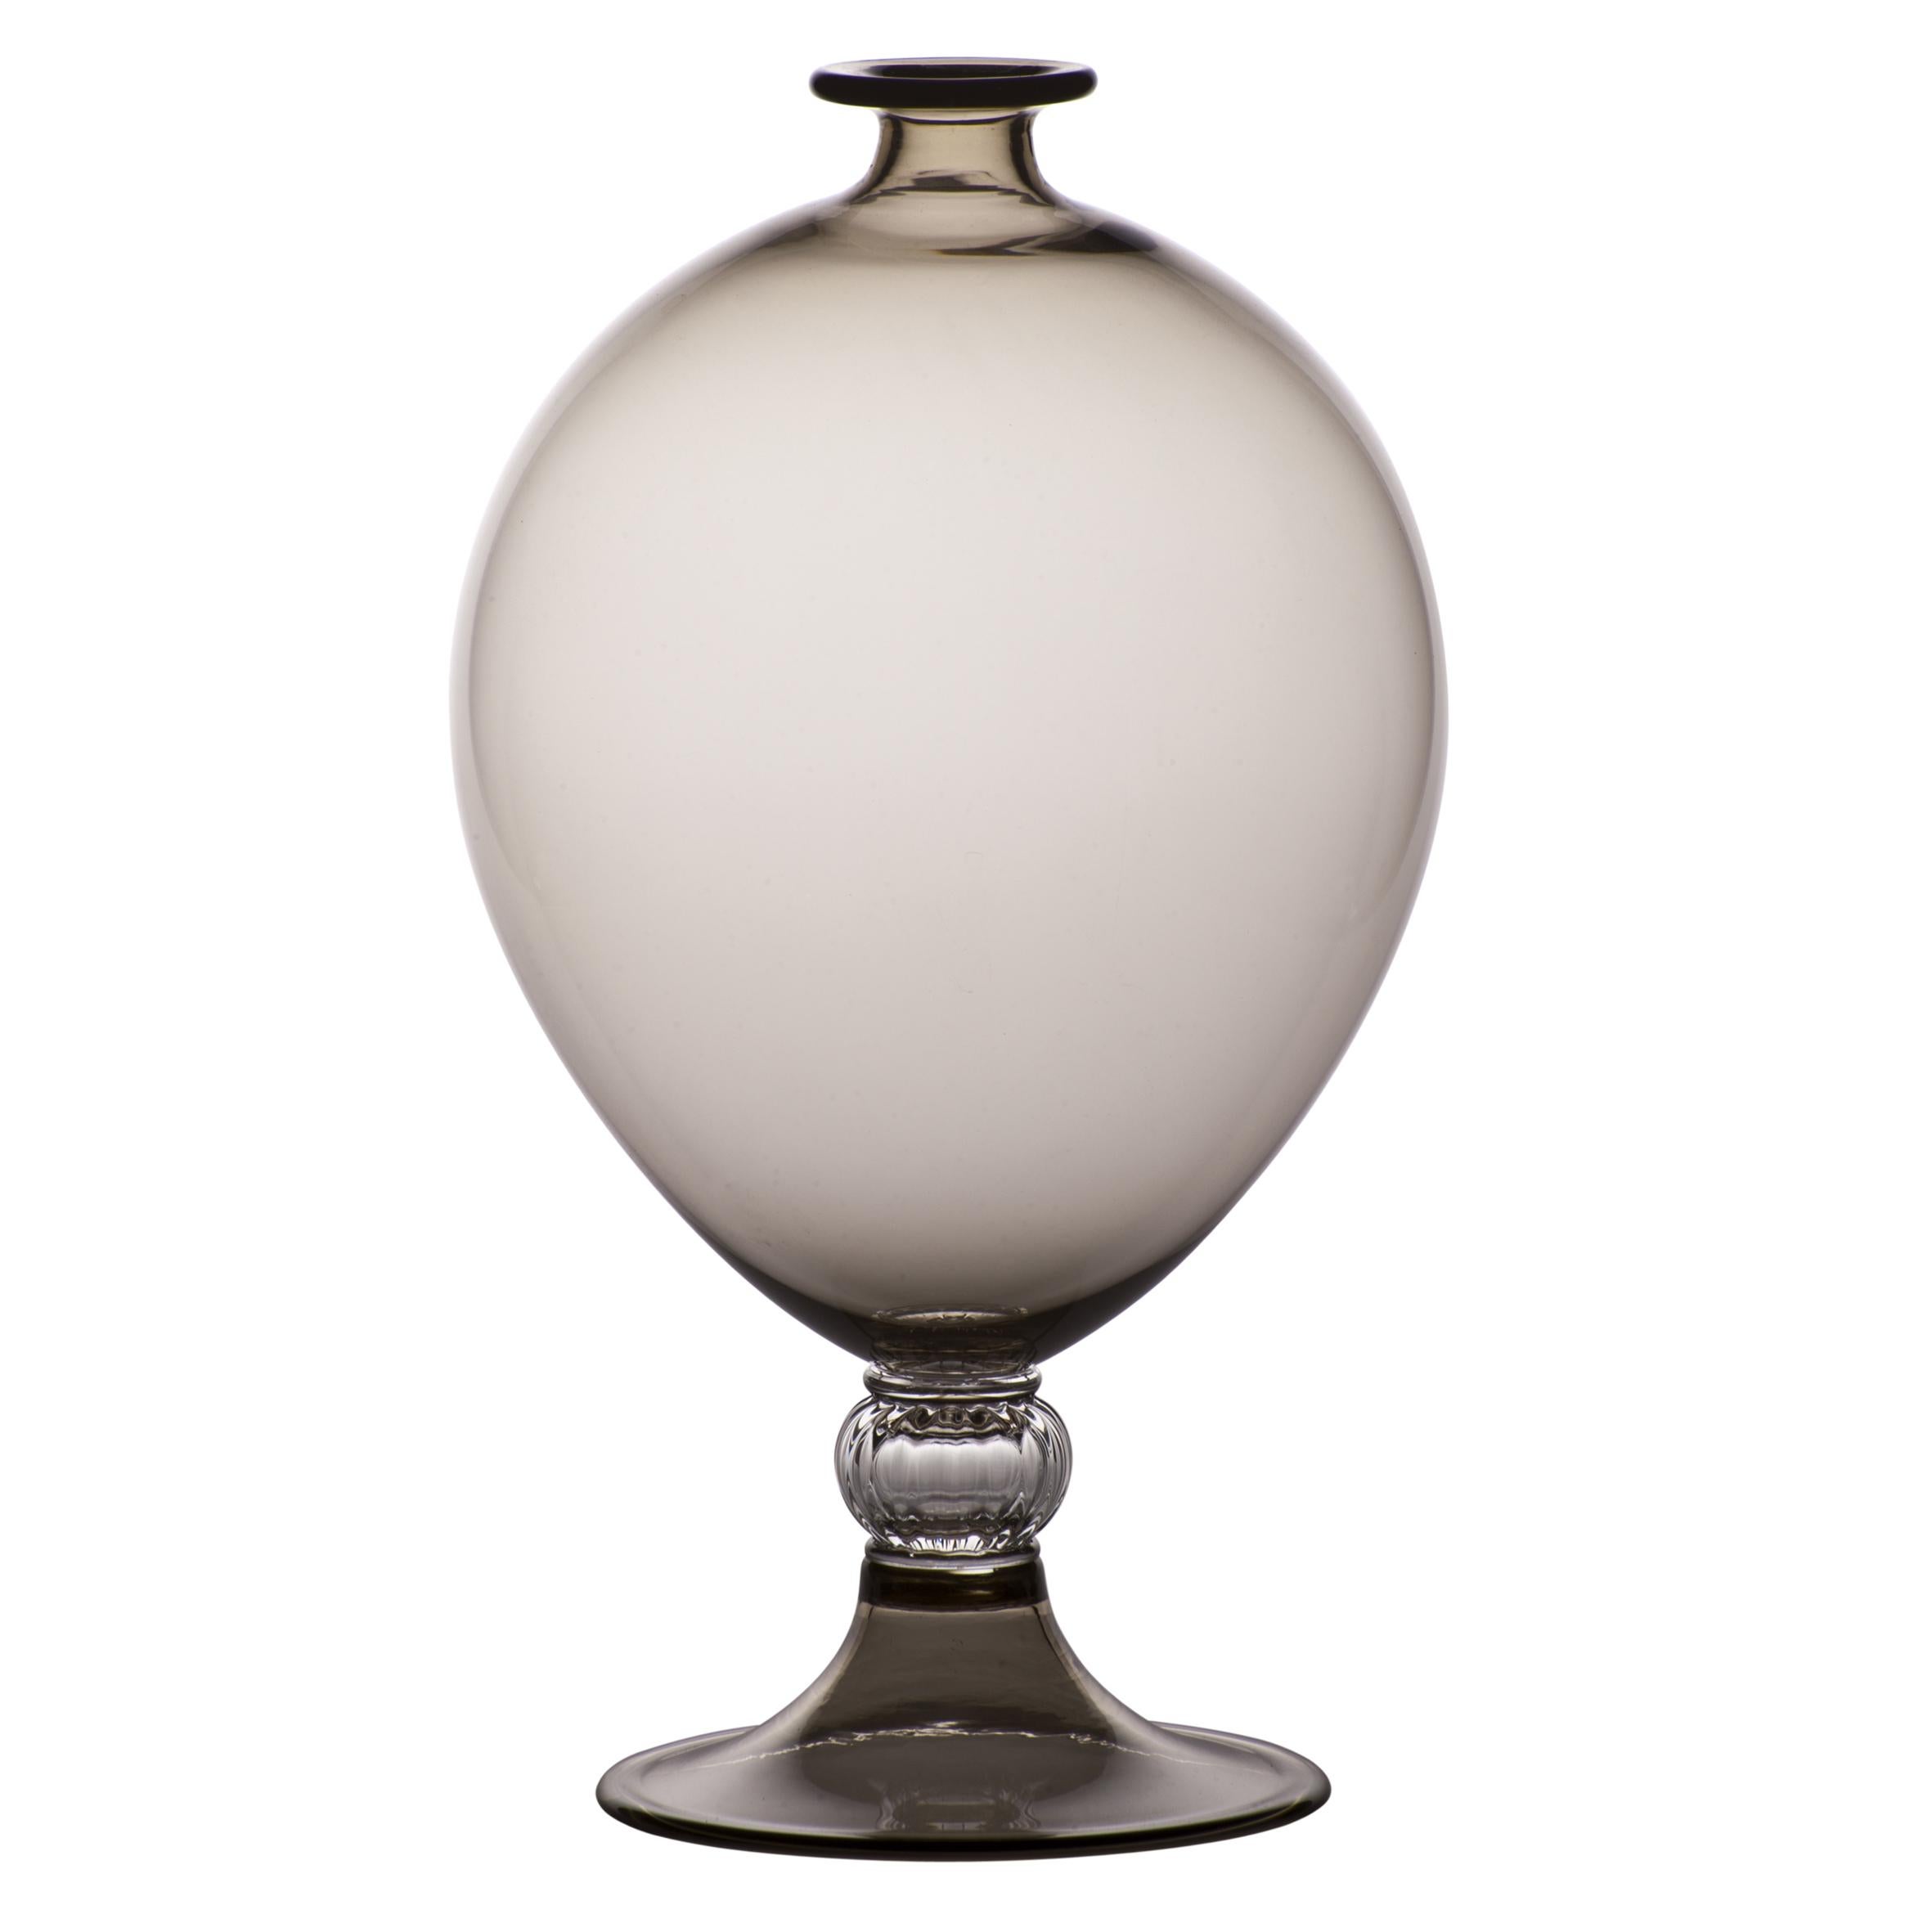 Vase en verre Venini avec corps cylindrique et base décorative en cristal. Présentée dans une classe de couleur grise avec cristal conçue en 1921. Parfait pour la décoration intérieure comme récipient ou comme pièce d'apparat pour n'importe quelle